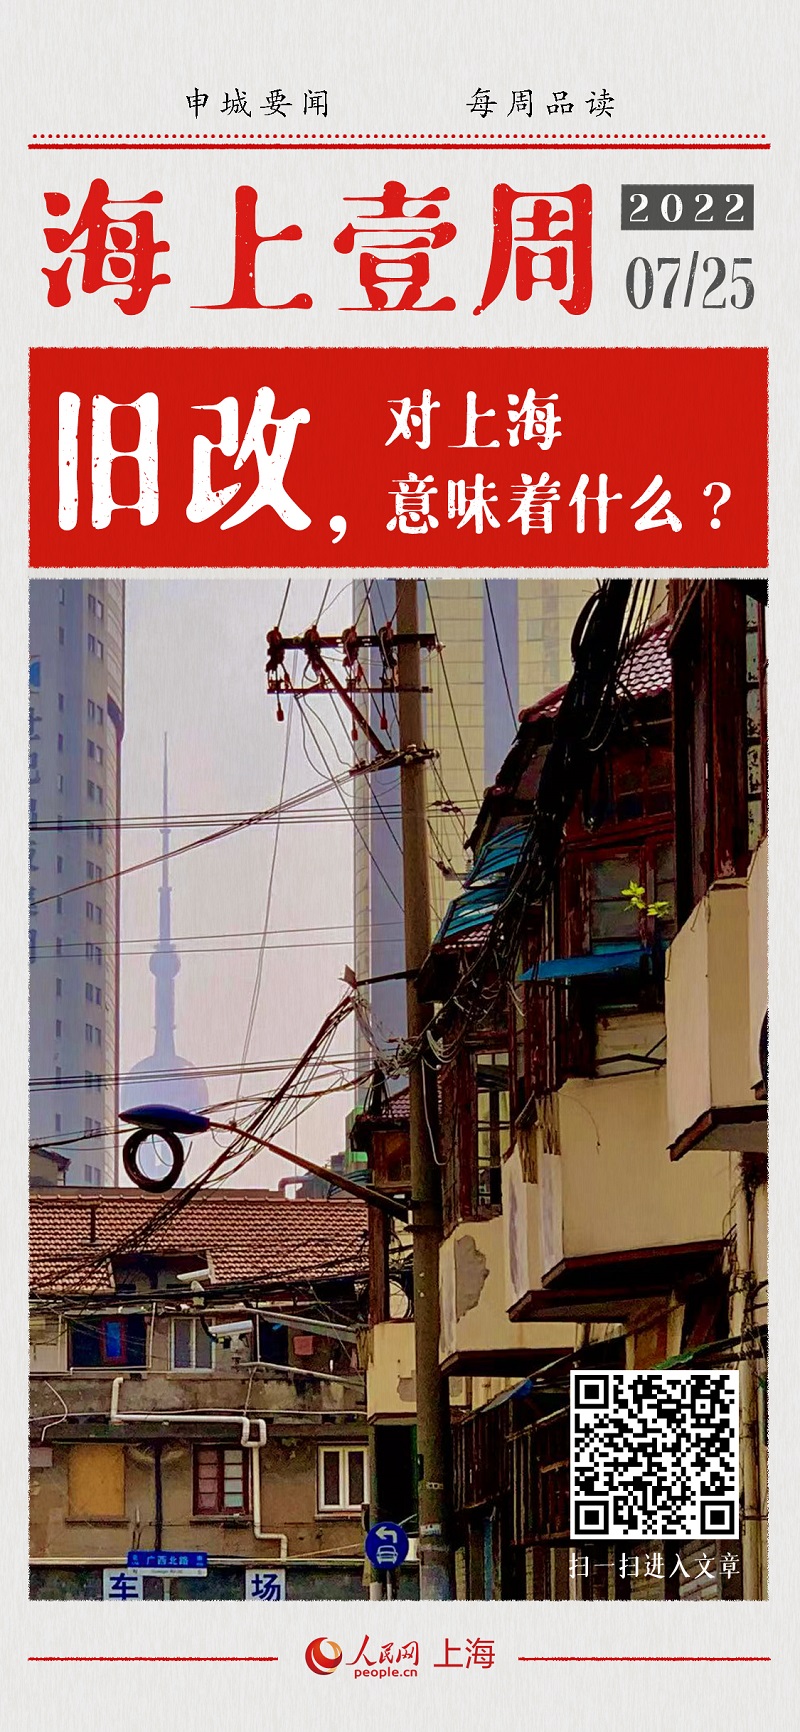 旧改，对上海意味着什么？旧改，对上海意味着什么？7月24日，上海市黄浦区建国东路68街坊和67街坊东块的房屋征收签约率已突破90%，标志着历经三十年的上海中心城区成片二级旧里以下房屋改造收官。眼望黄浦江畔霓虹闪烁，身处旧里陋室拥挤不堪的日子，即将画上句号……[详细]